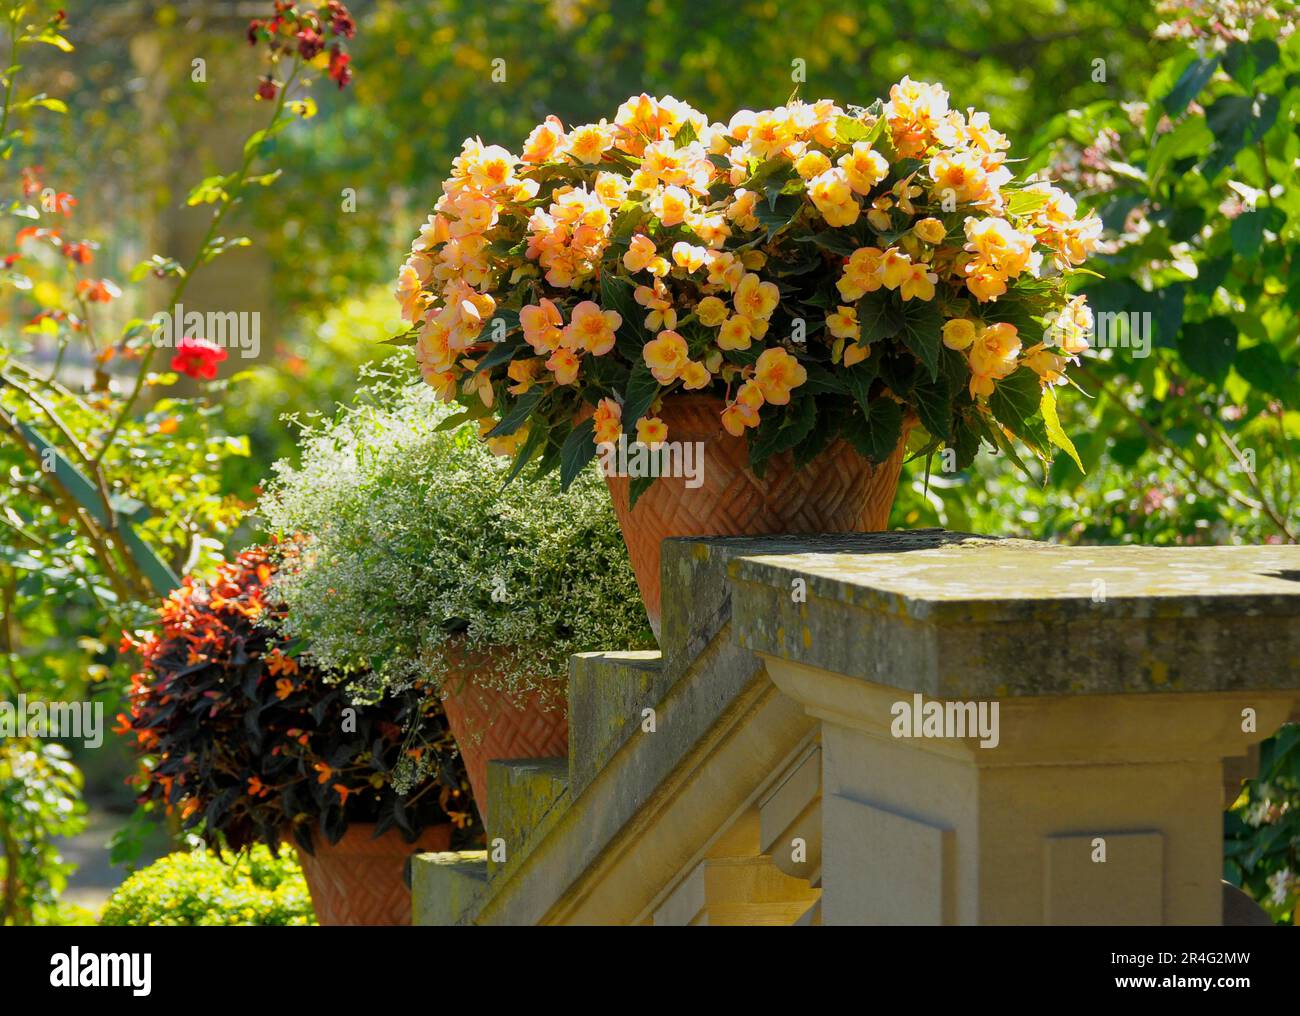 Bluehendes Barock Ludwigsburg, Begonias flowering in pot Stock Photo